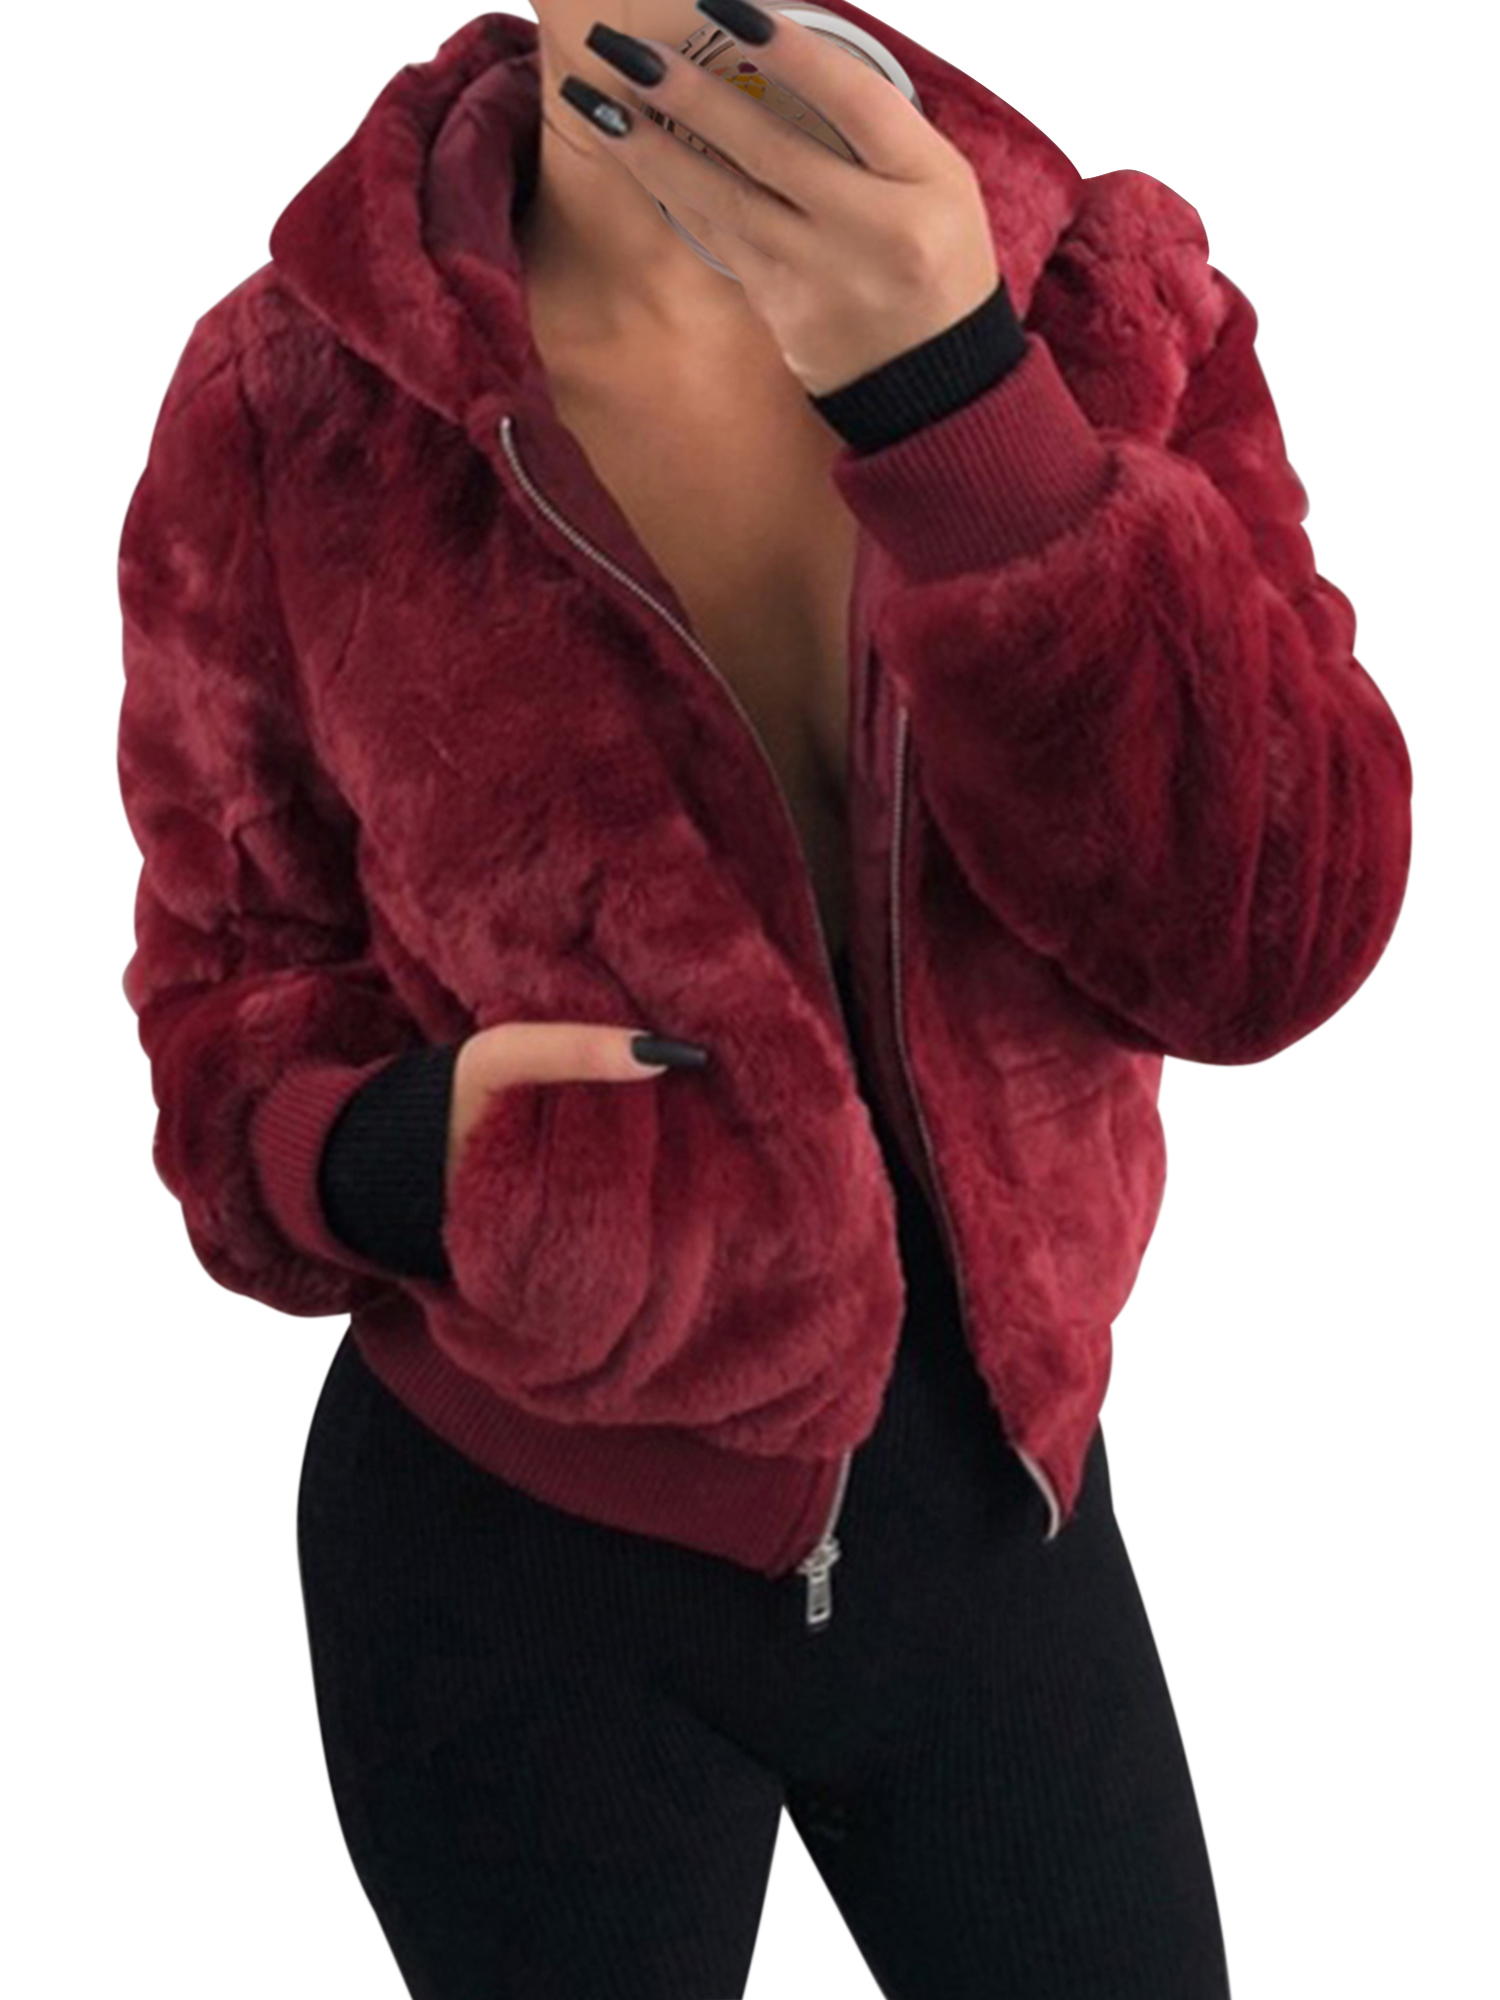 Vintage Women Faux Fleece Coat Jacket Hooded Outwear Ladies Winter Fashon Crop Zipper Coat Sweatshirt Sweater Long Sleeve Coat Fleece Warm Jacket Outwear - image 1 of 5